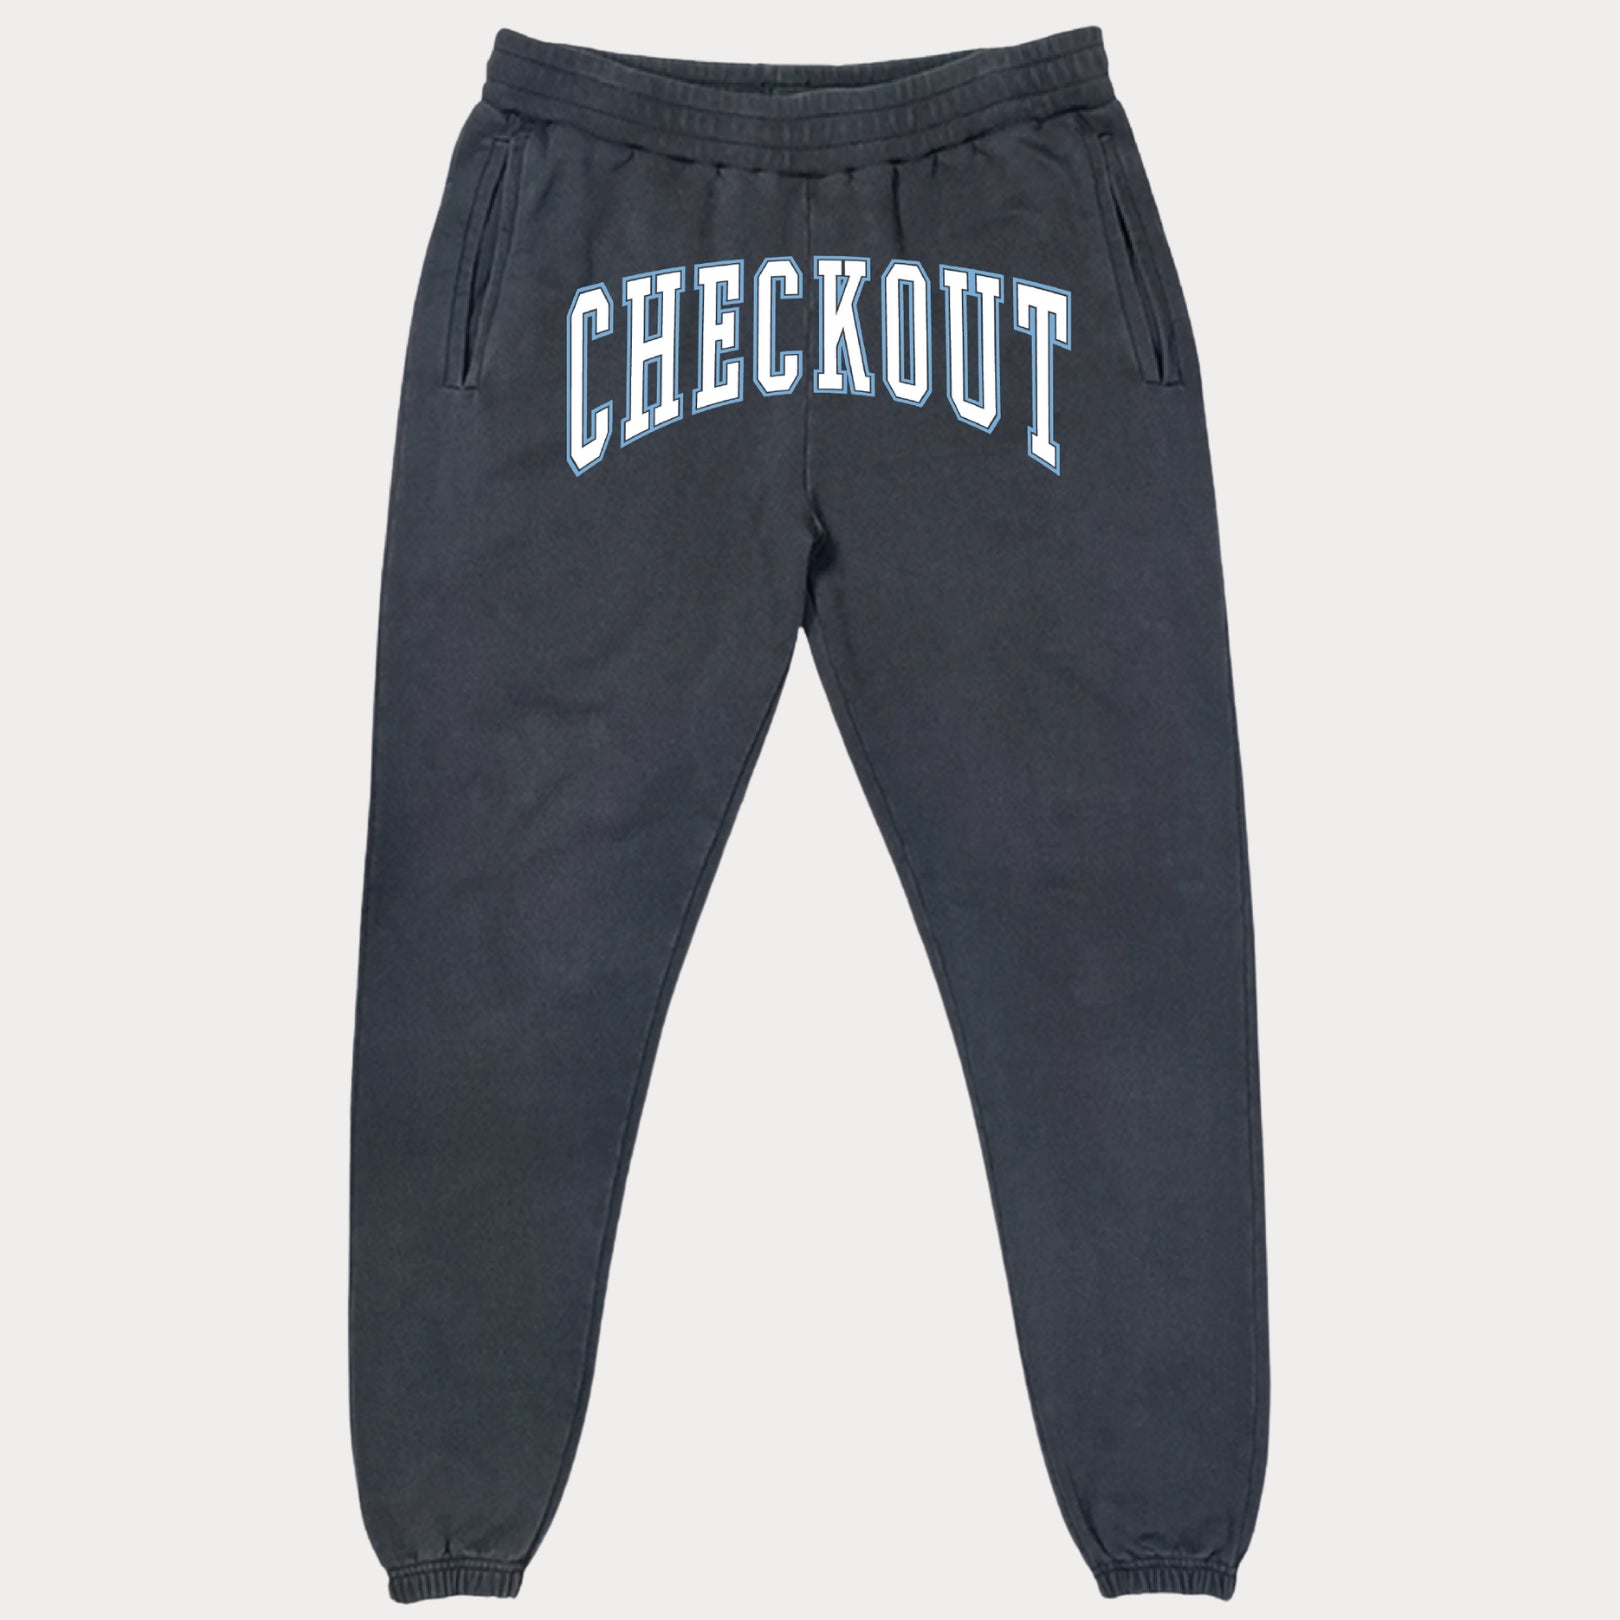 CHECKOUT, Vintage Dark Grey Checkout Sweatpants